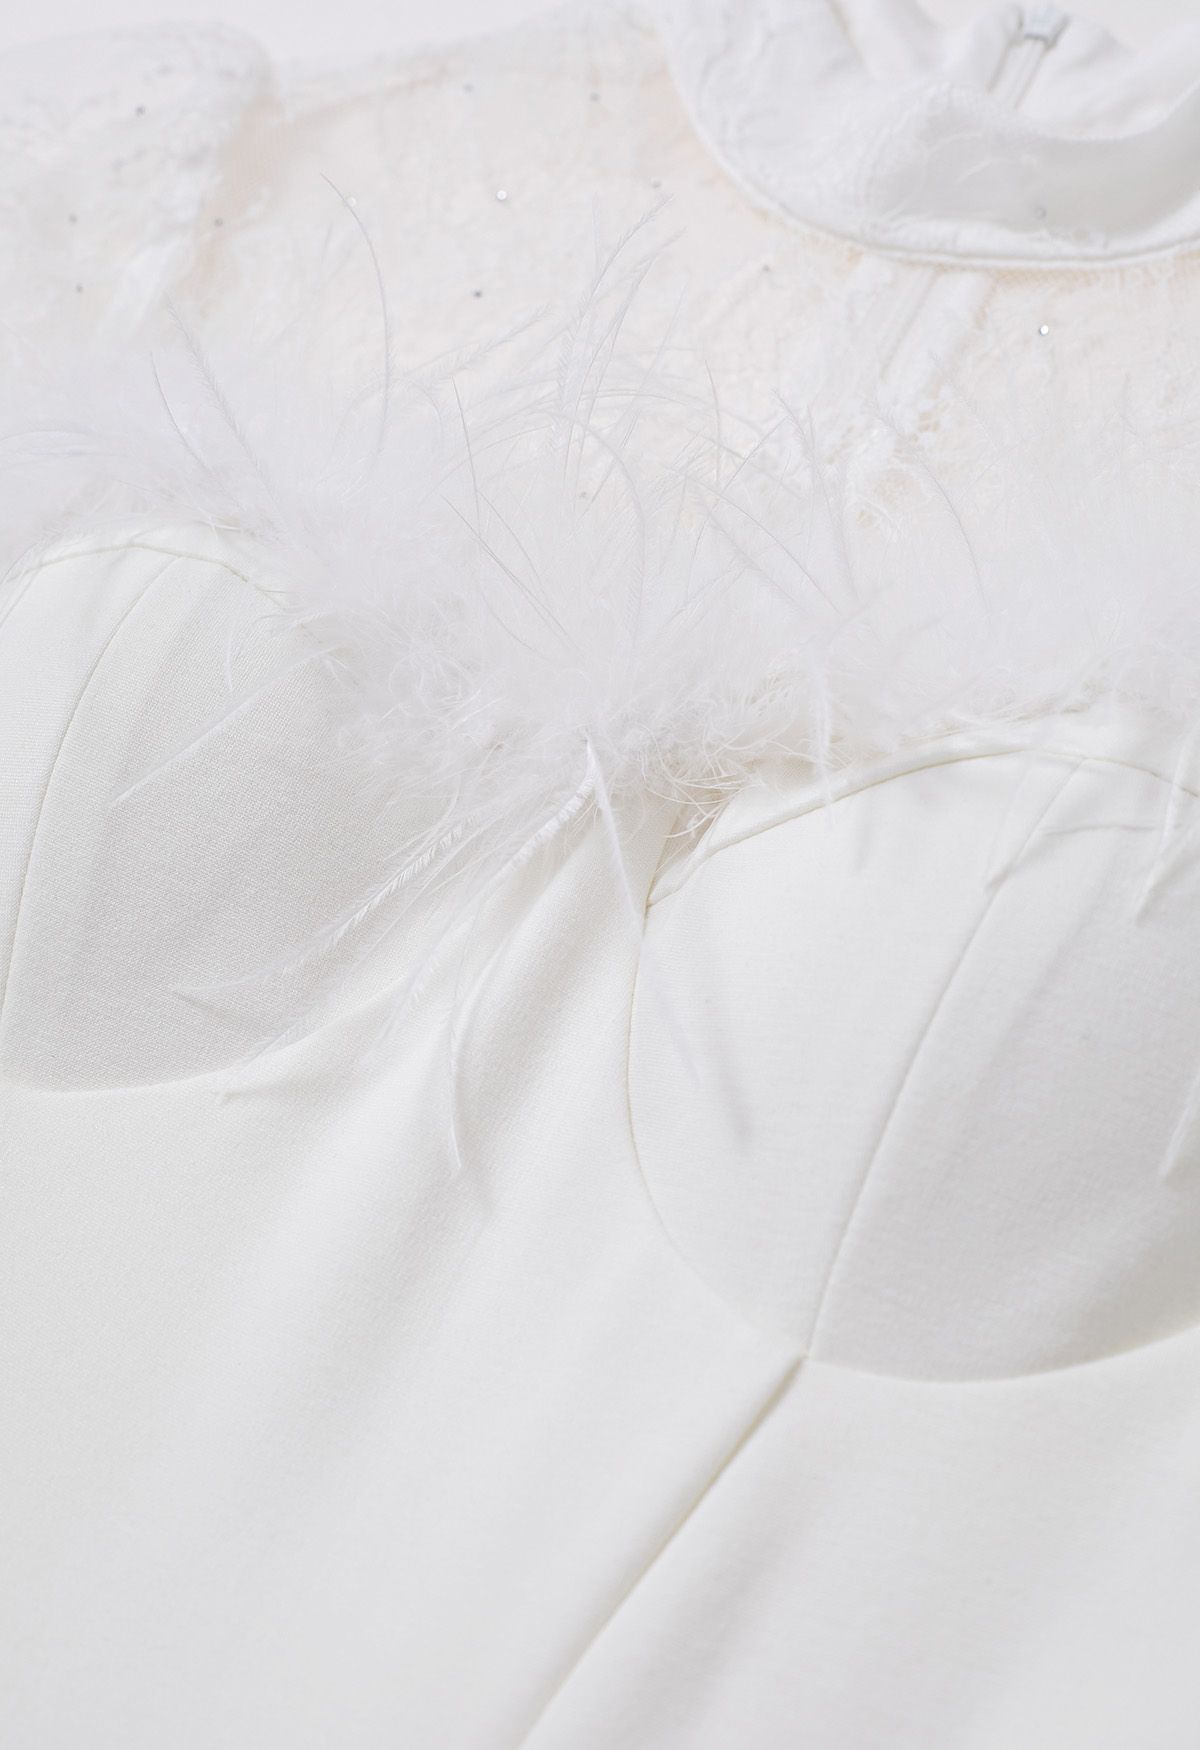 Lace Spliced Feather Trim Bodycon Midi Dress in White